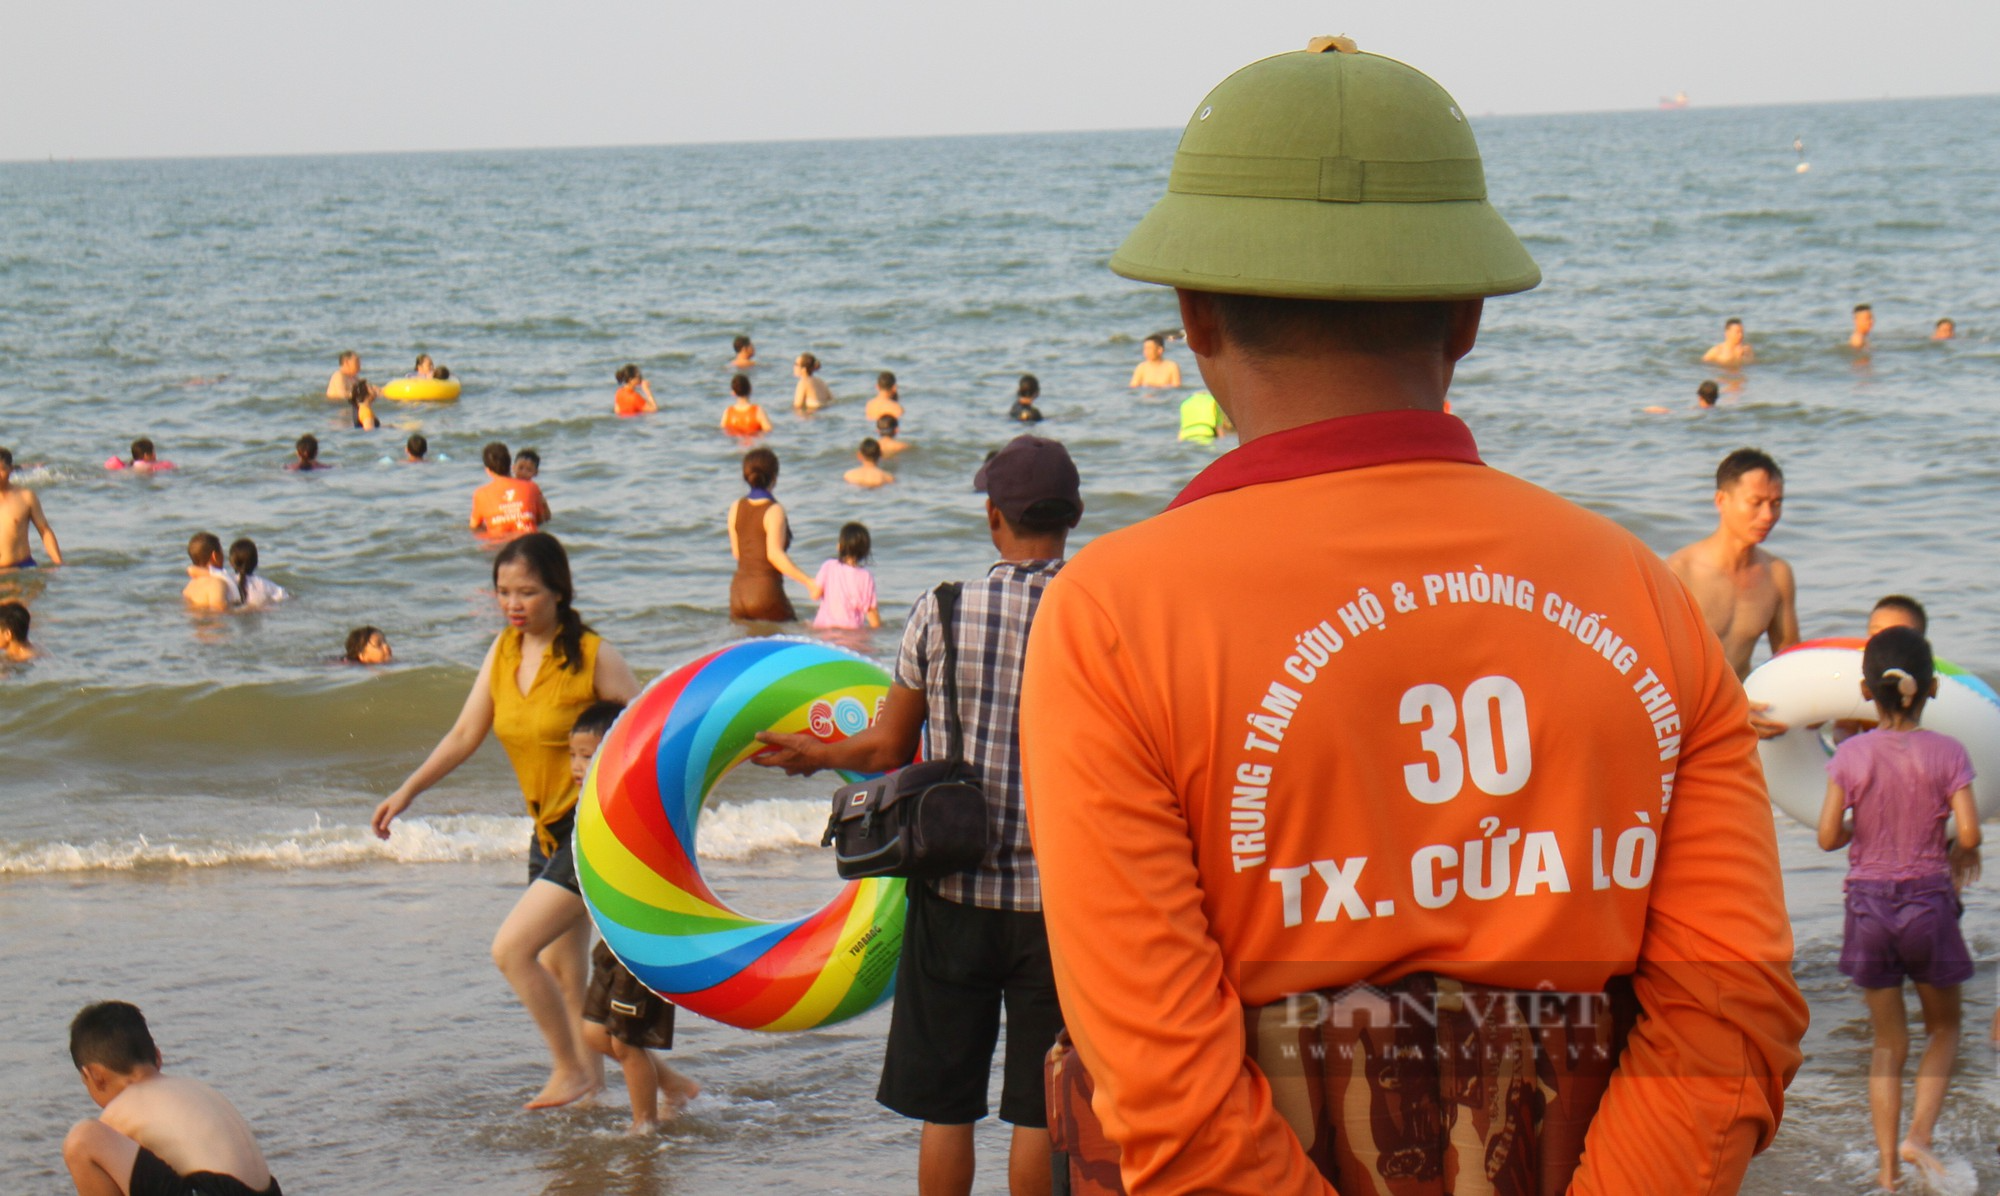 Nghệ An: Du khách đổ về kín bãi biển Cửa Lò ngày đầu nghỉ lễ Quốc khánh 2/9 - Ảnh 5.